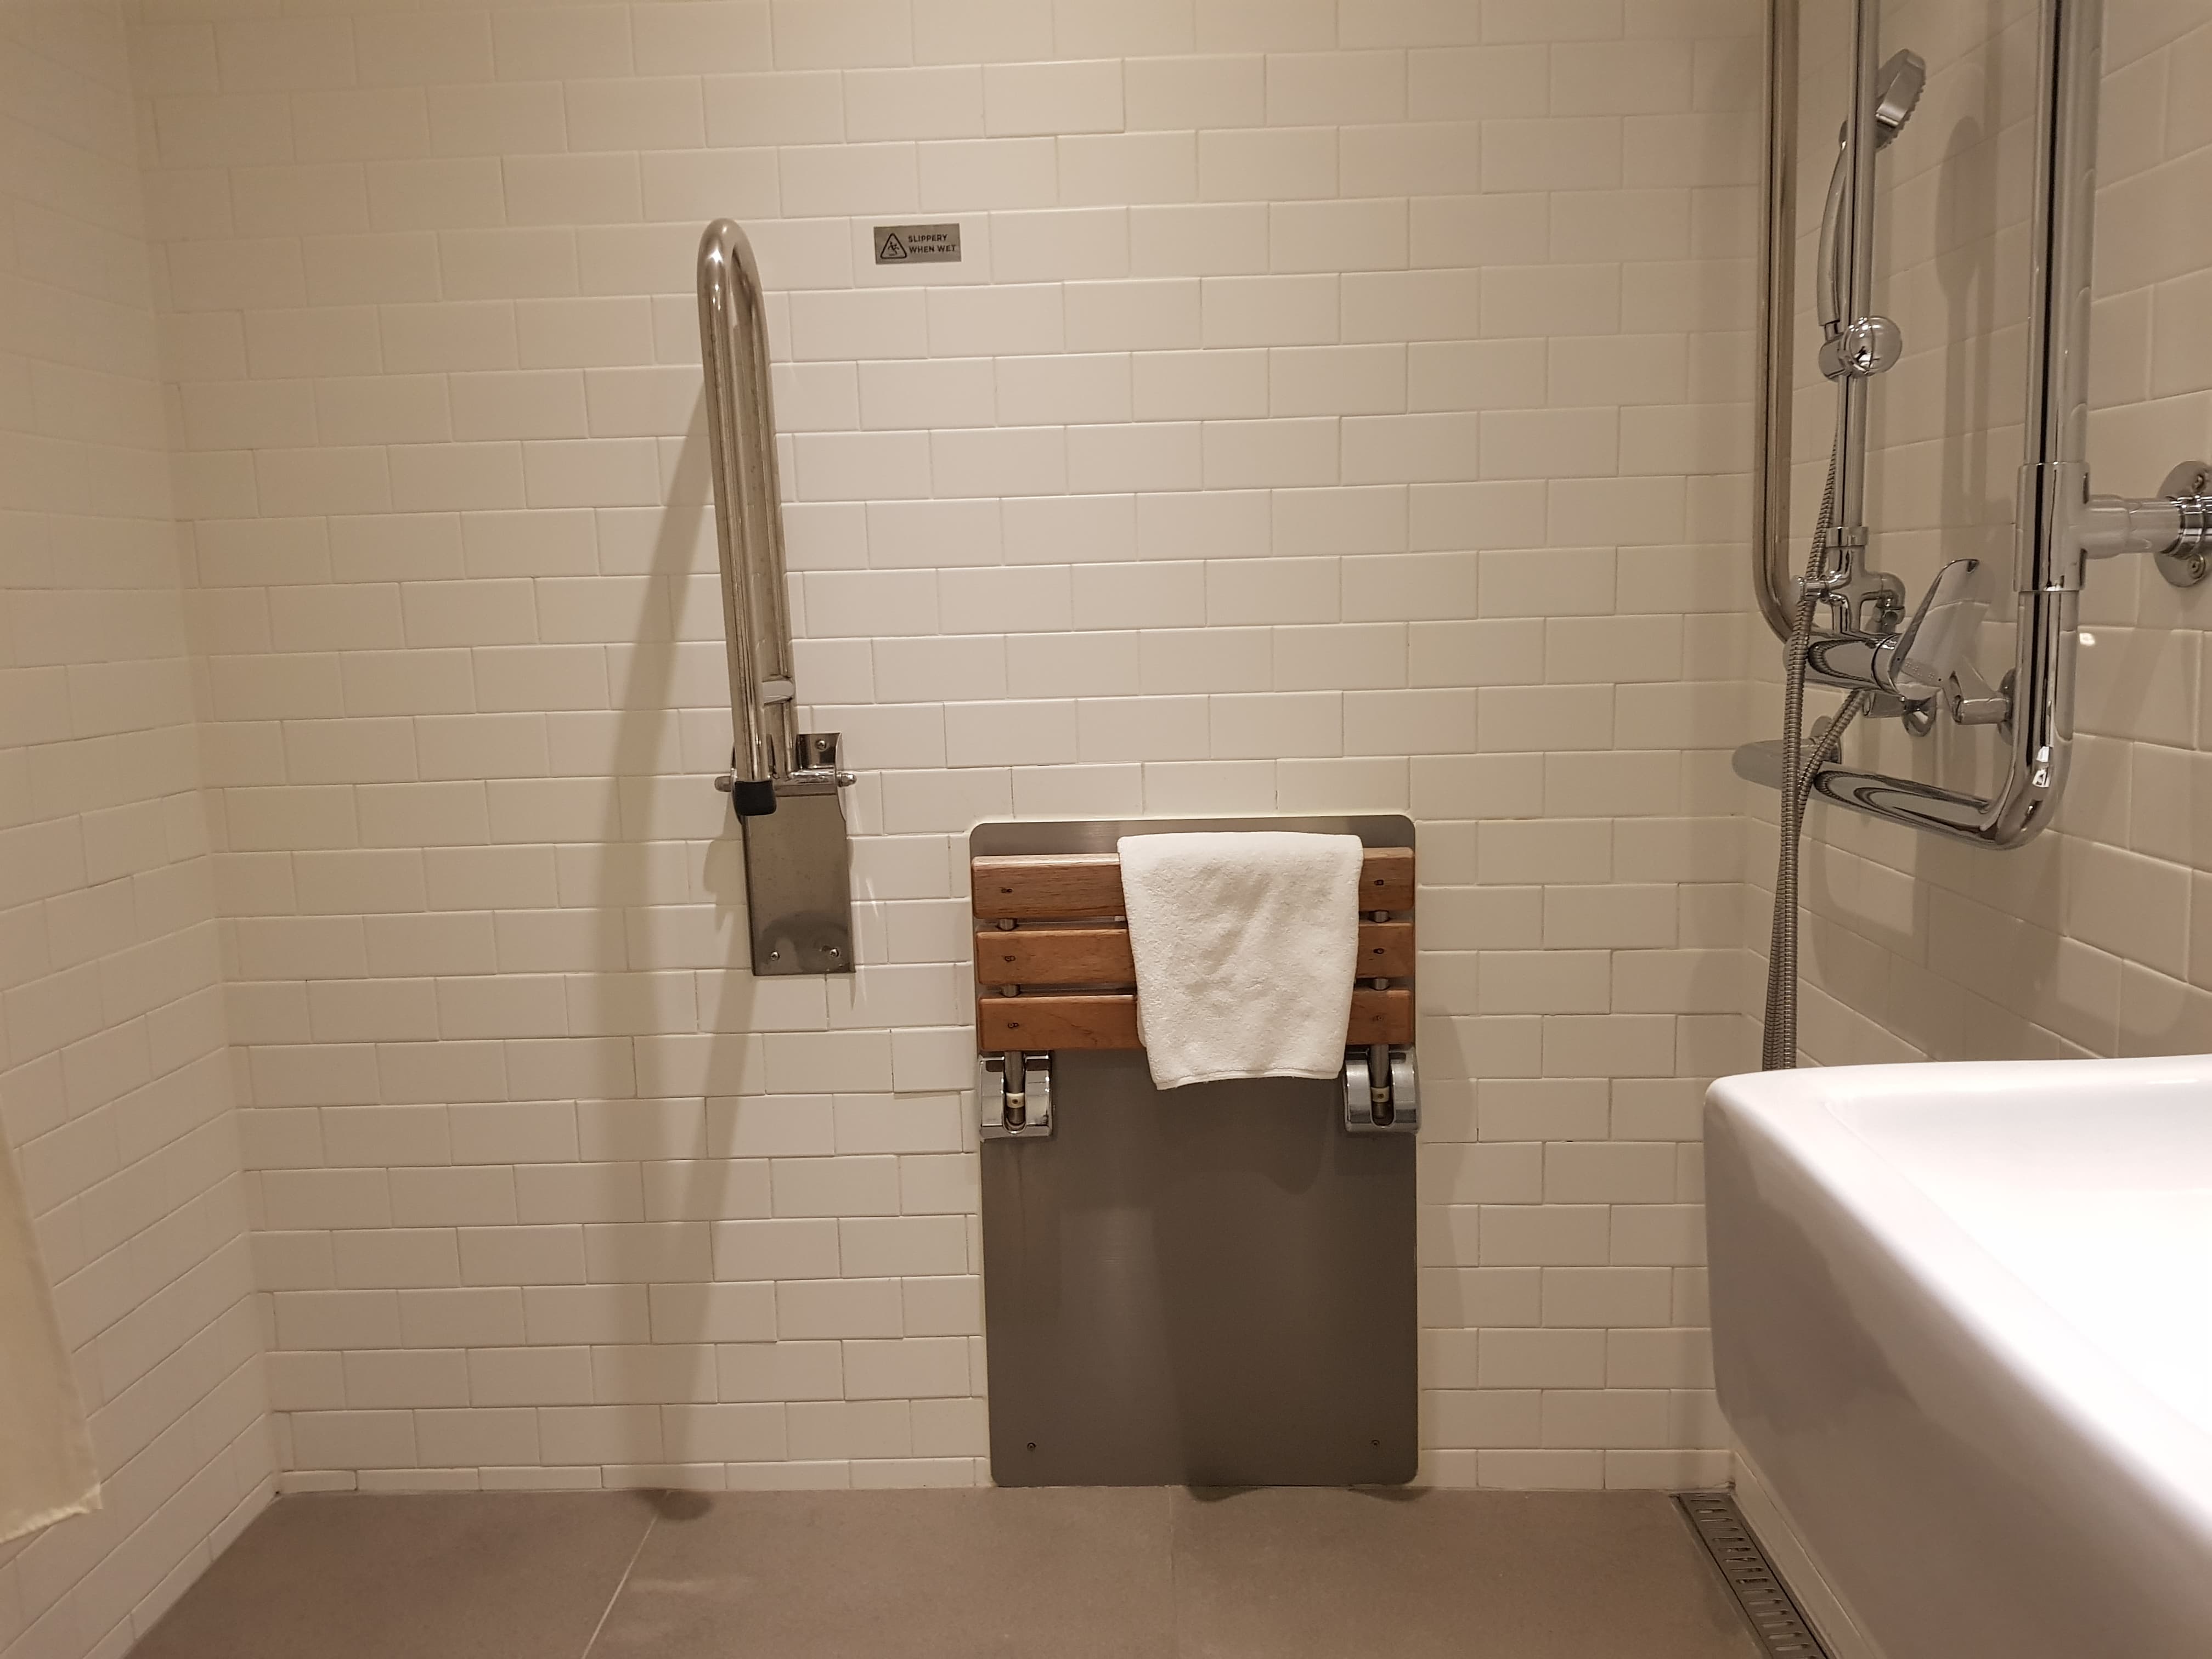 장애인 객실 화장실0 : 수건이 걸려있는 벽걸이형 샤워의자